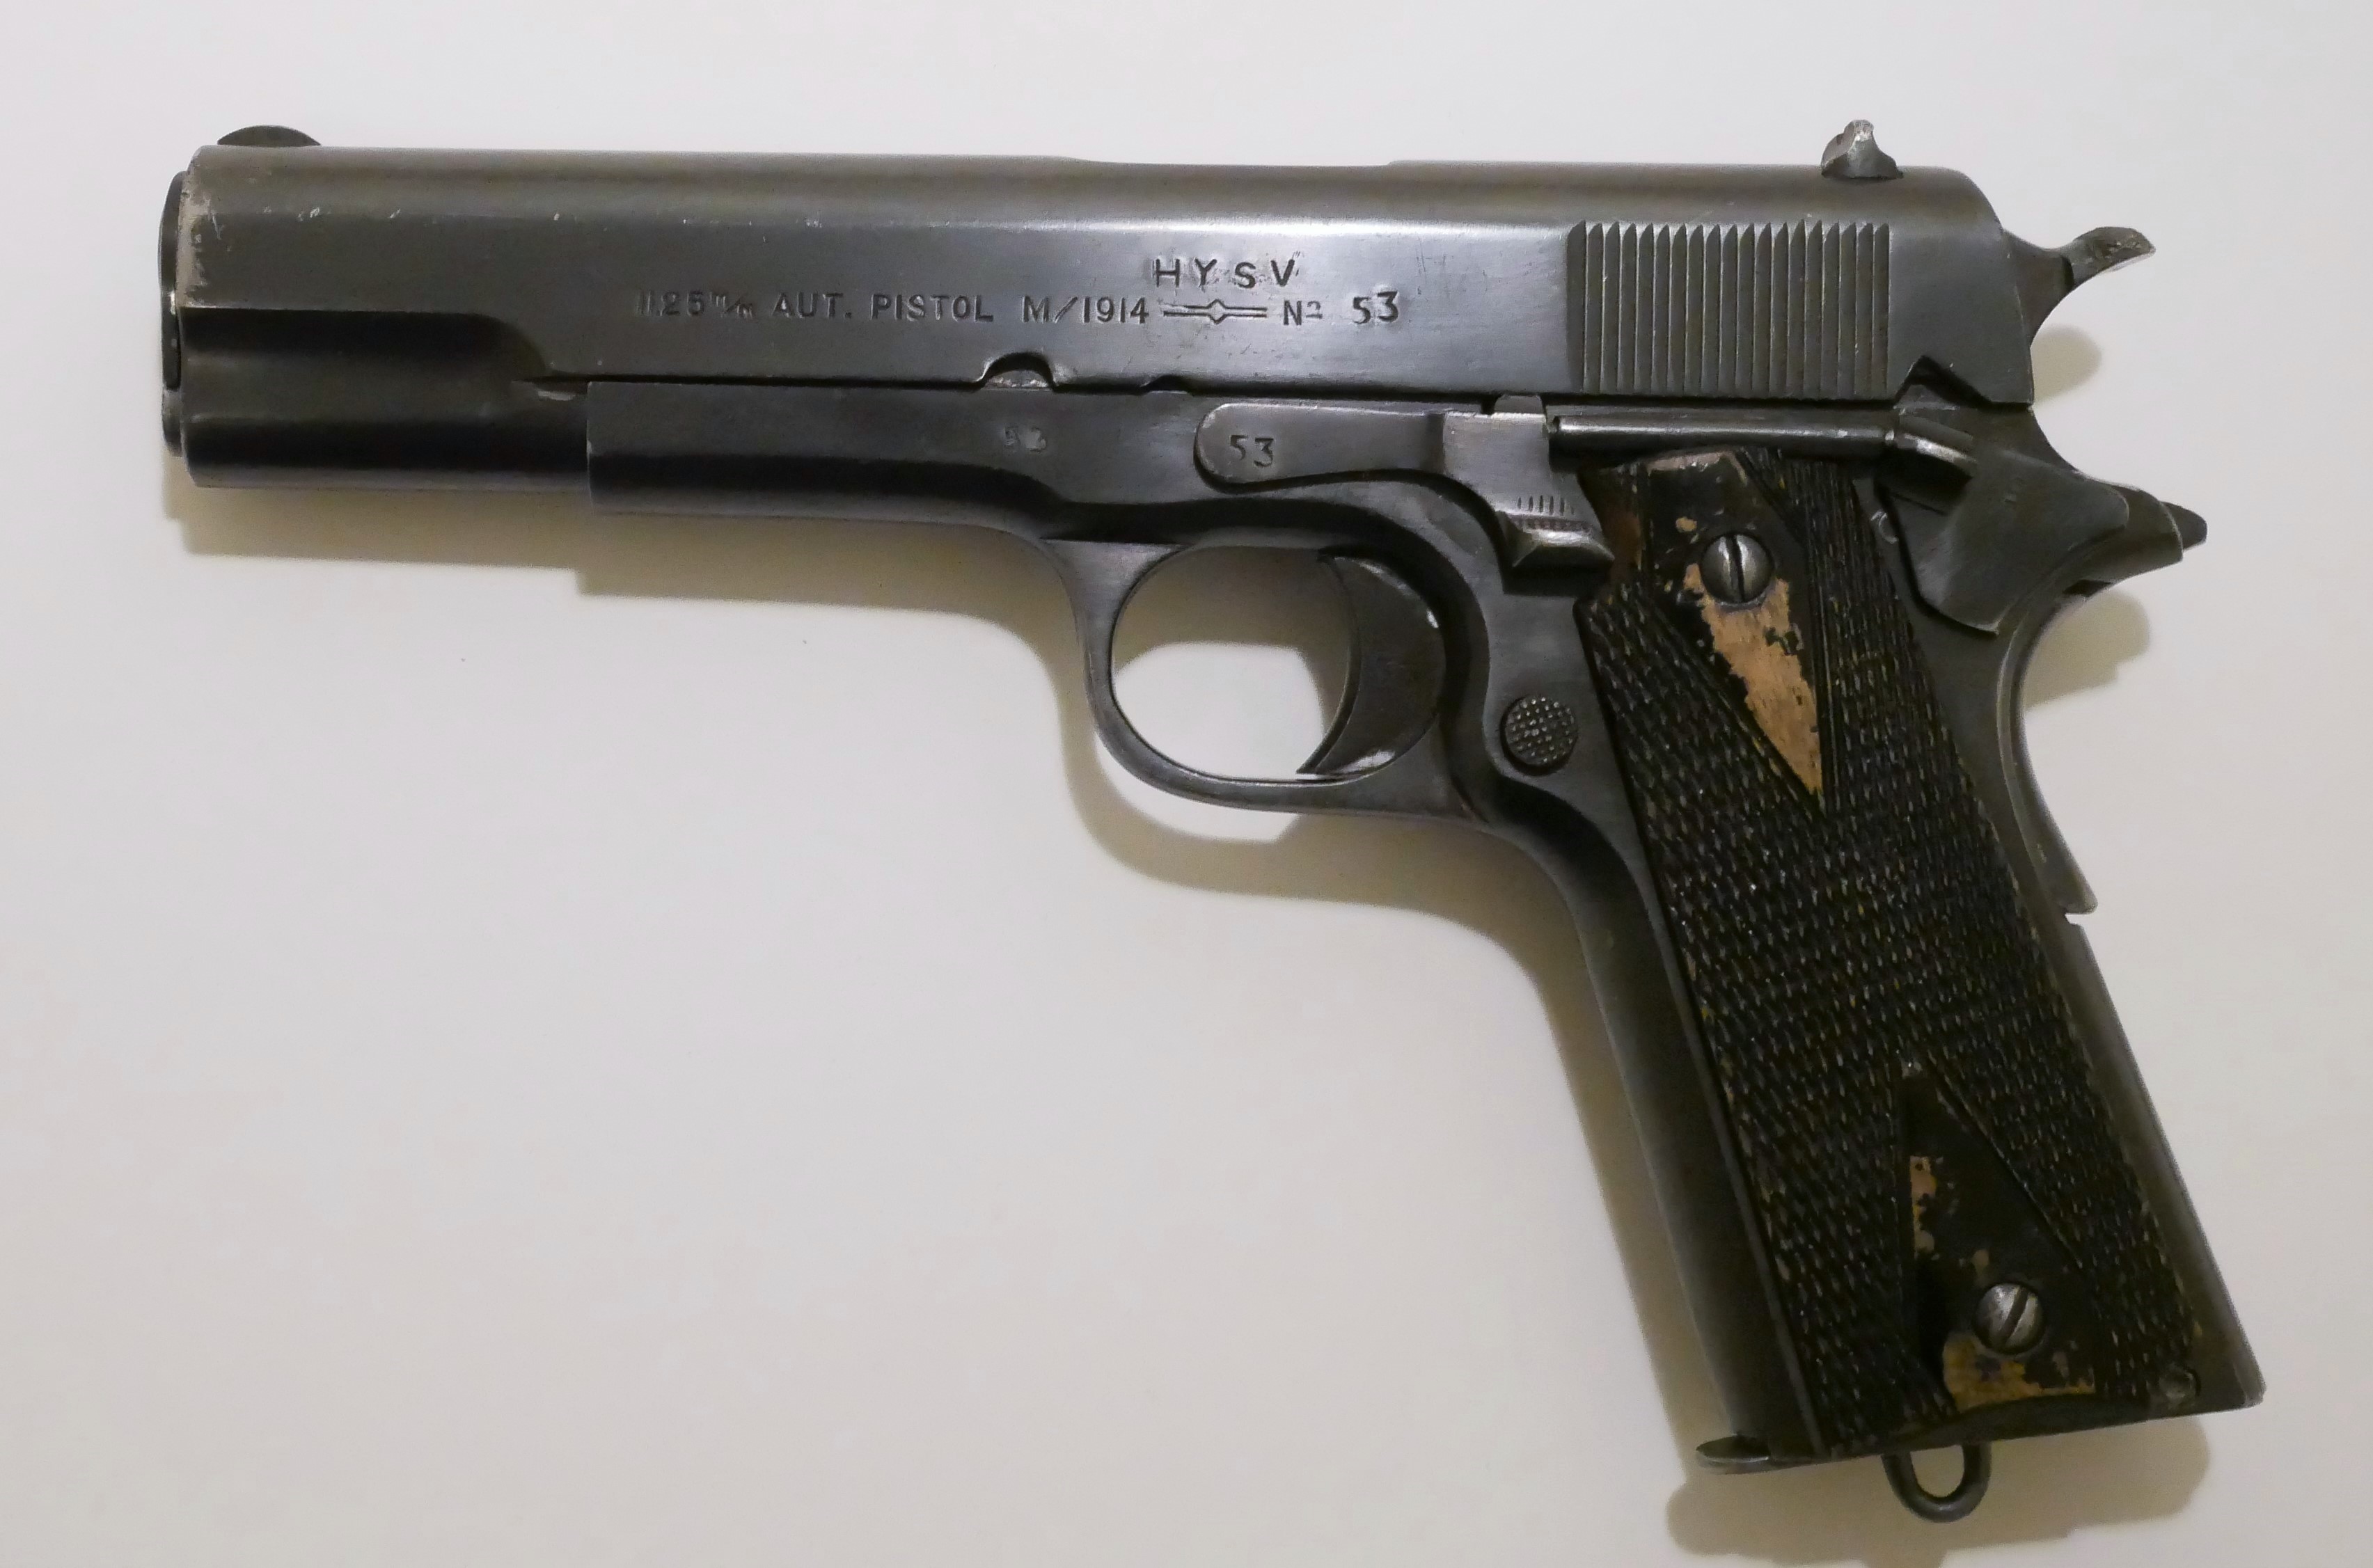 ./guns/pistol/bilder/Pistol-Kongsberg-M1914-HYSV-53-1.JPG